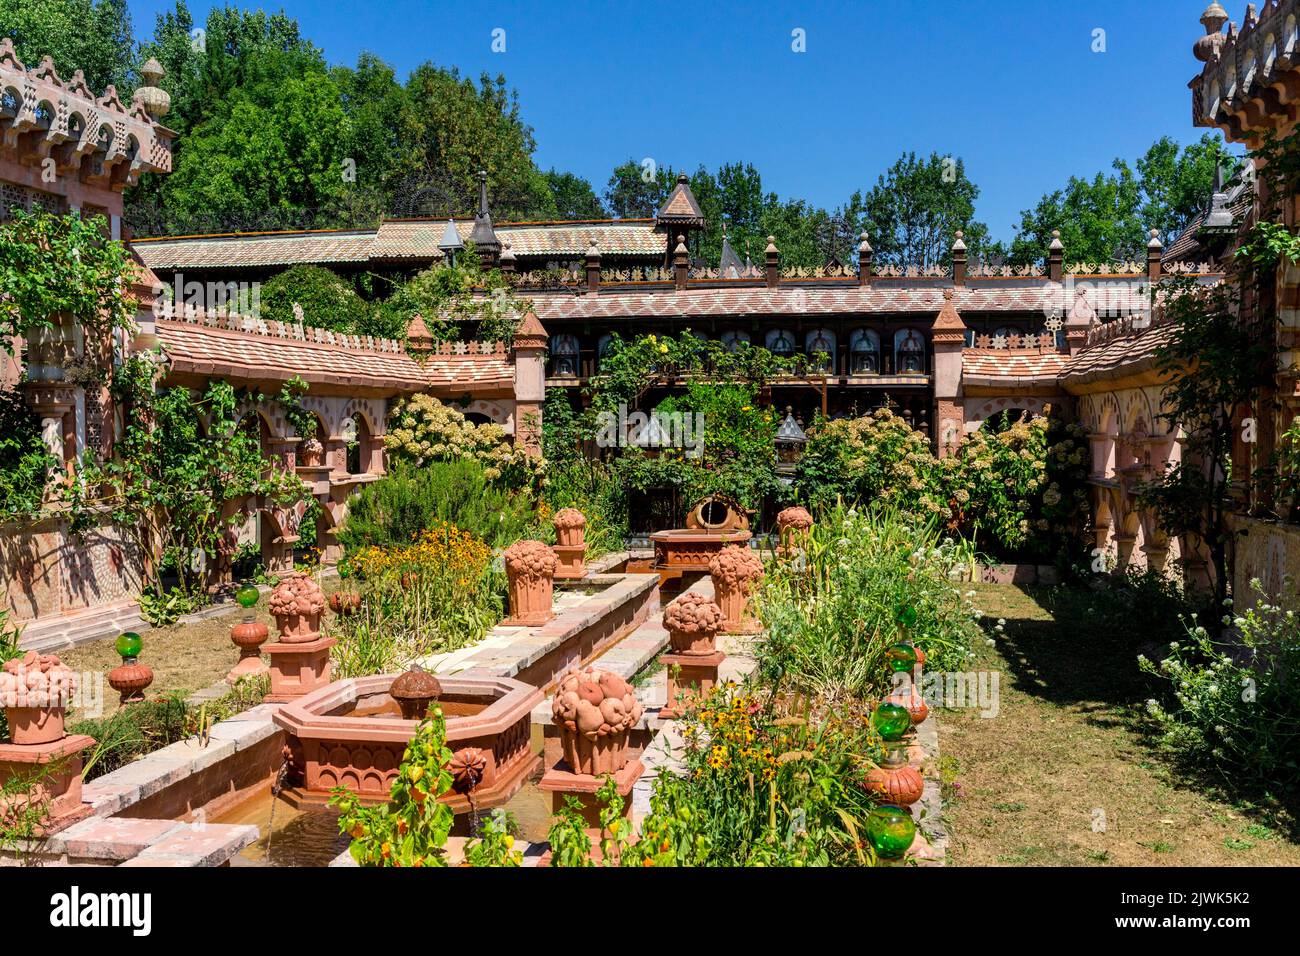 Les Jardins Secrets ist ein privater phantastischer Garten, der in der Region Haute Savoie/Frankreich besucht werden kann Stockfoto